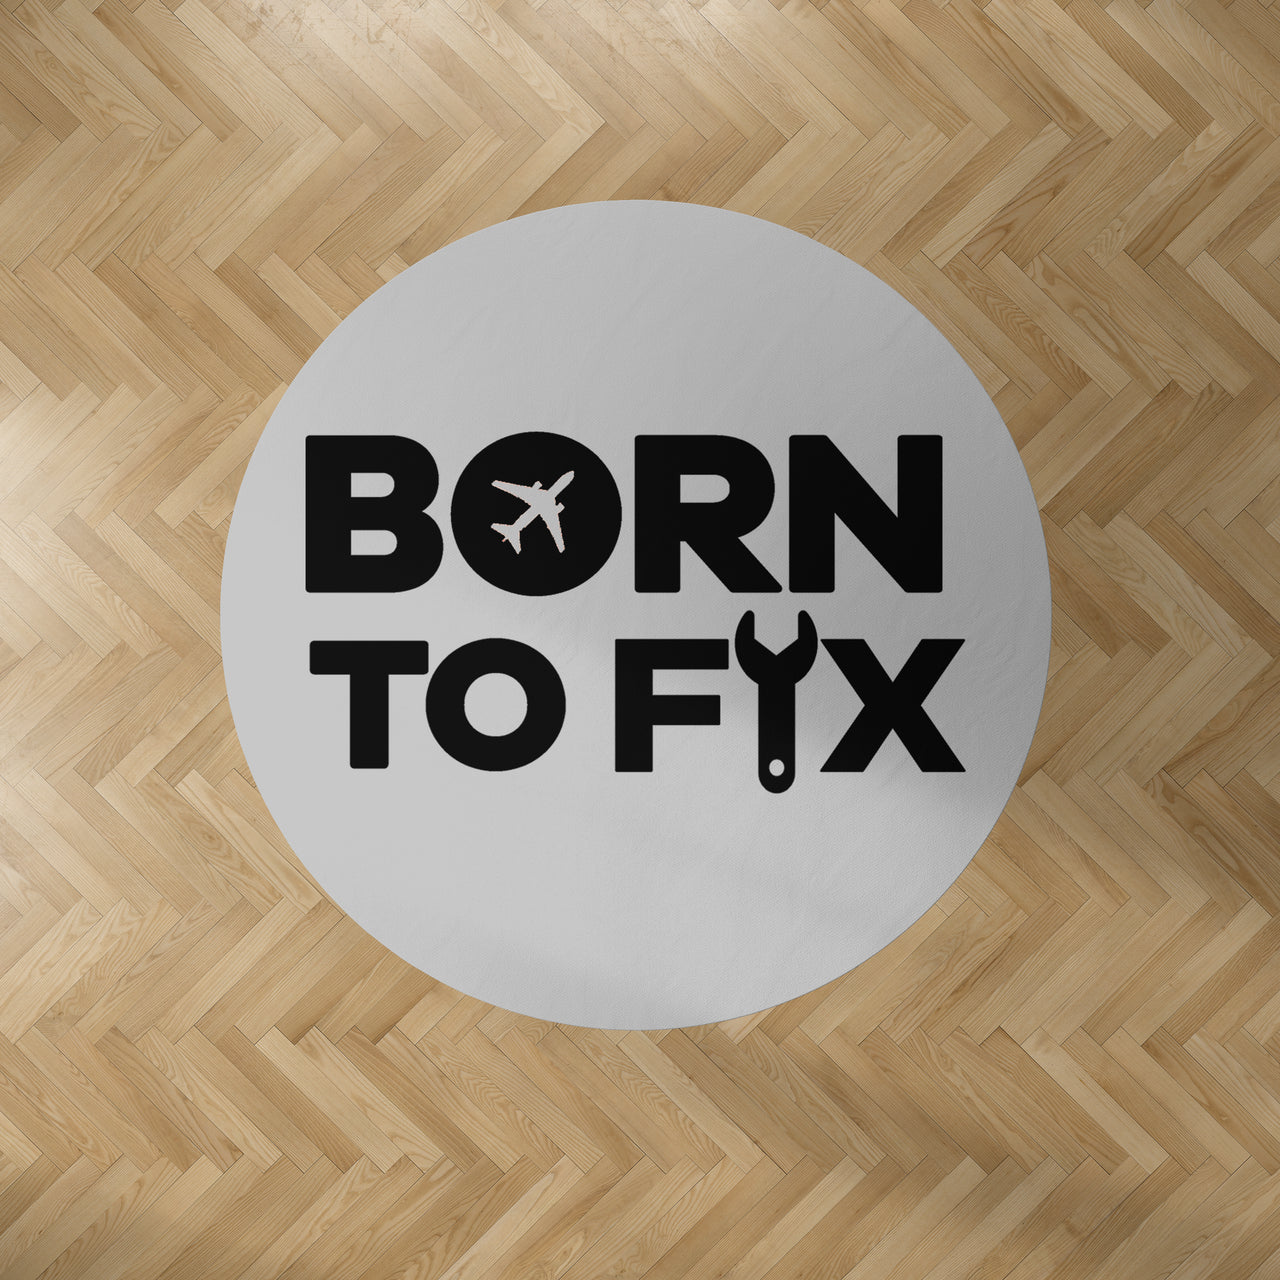 Born To Fix Airplanes Designed Carpet & Floor Mats (Round)